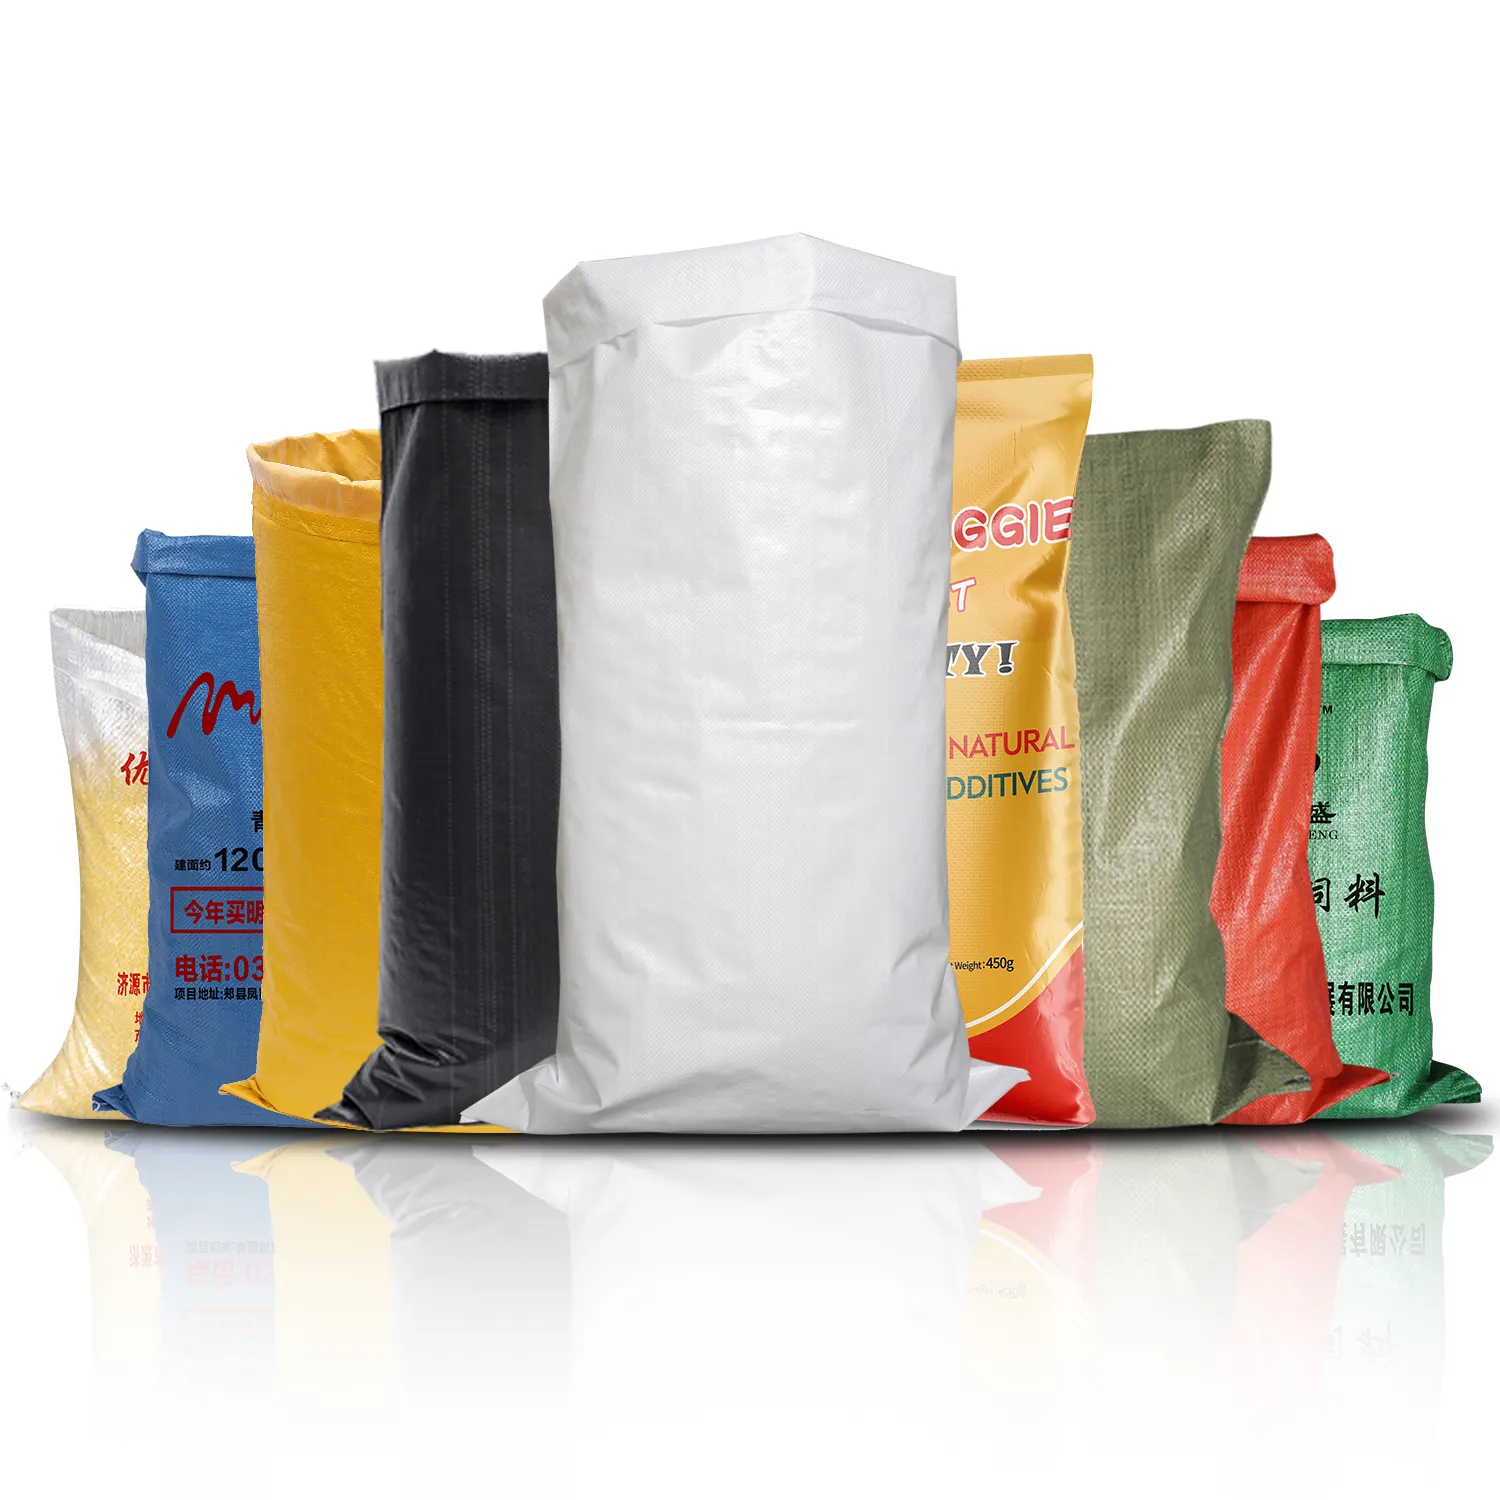 Vente en gros sac vide en polypropylène pour farine de riz, grain, maïs, blé, ciment, herbe, semences, engrais, sac tissé en PP